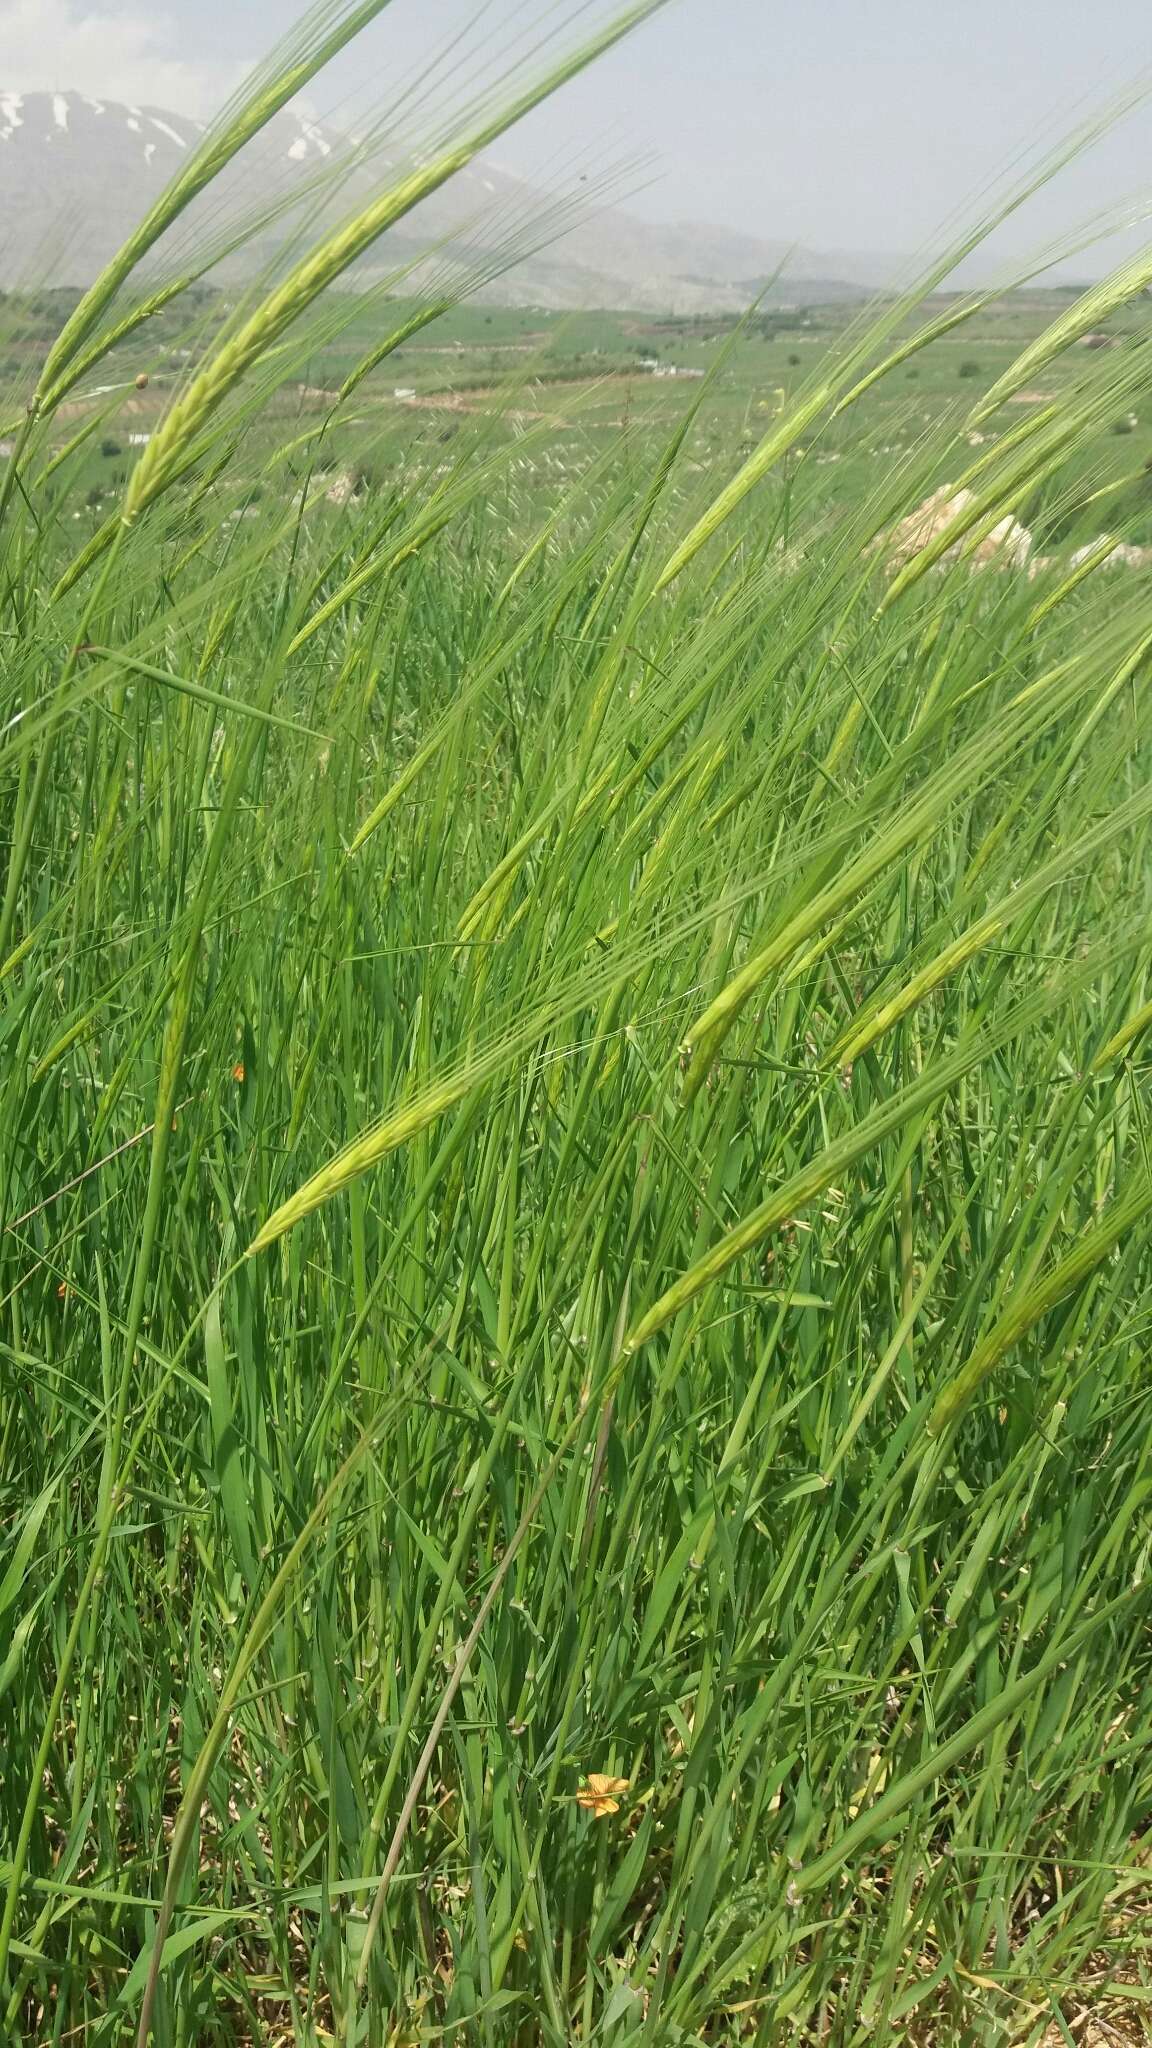 Image of spontaneous barley